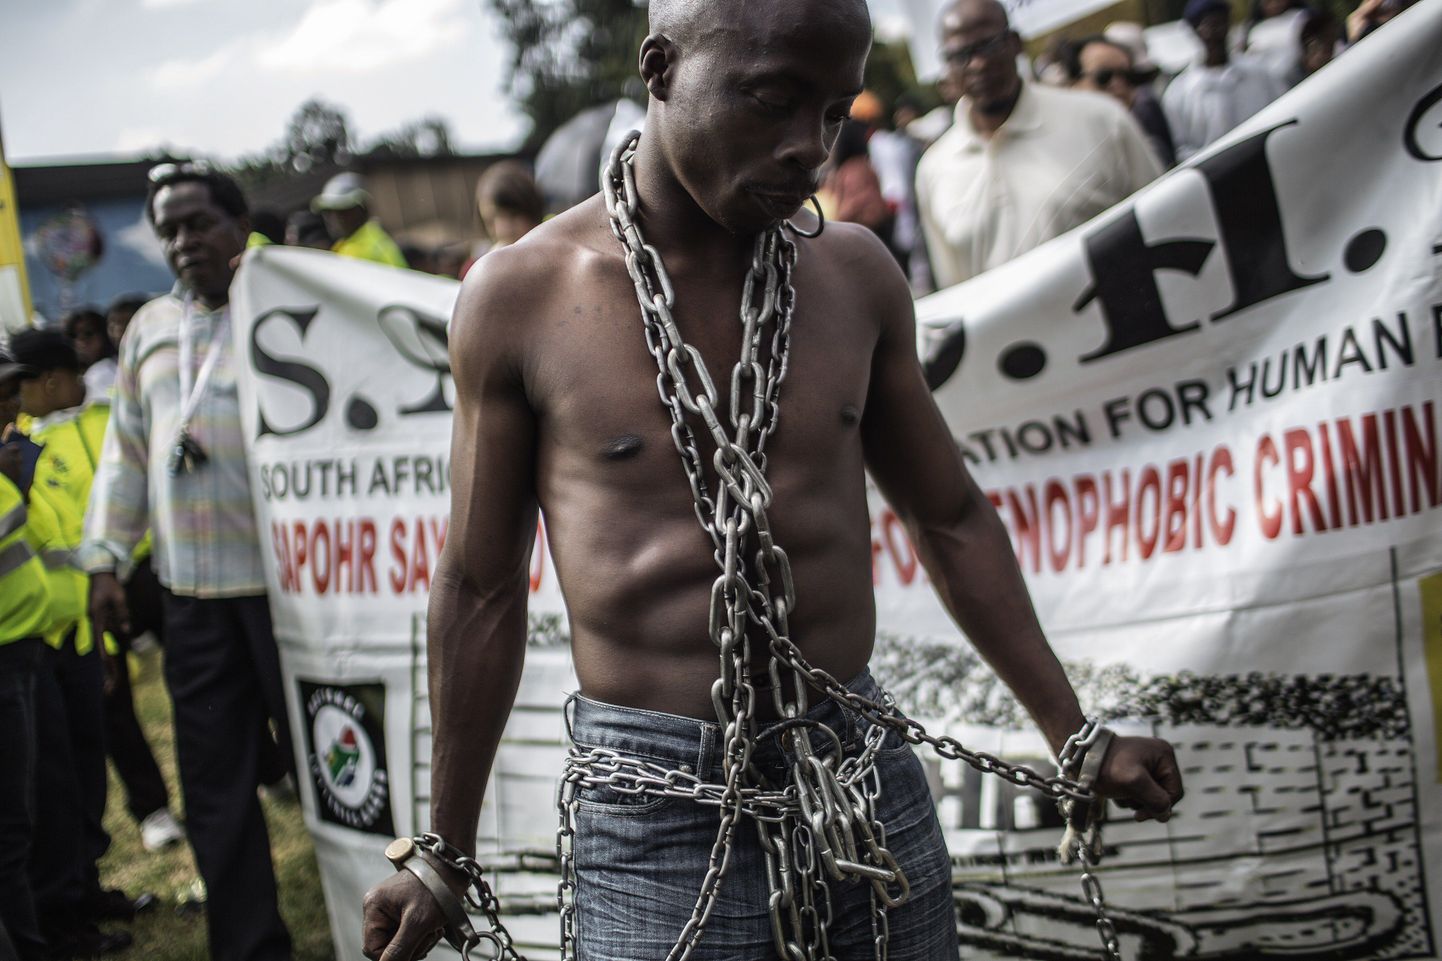 Mees ahelates protesteerimas rassismi vastu Johannesburgis Lõuna-Aafrikas.